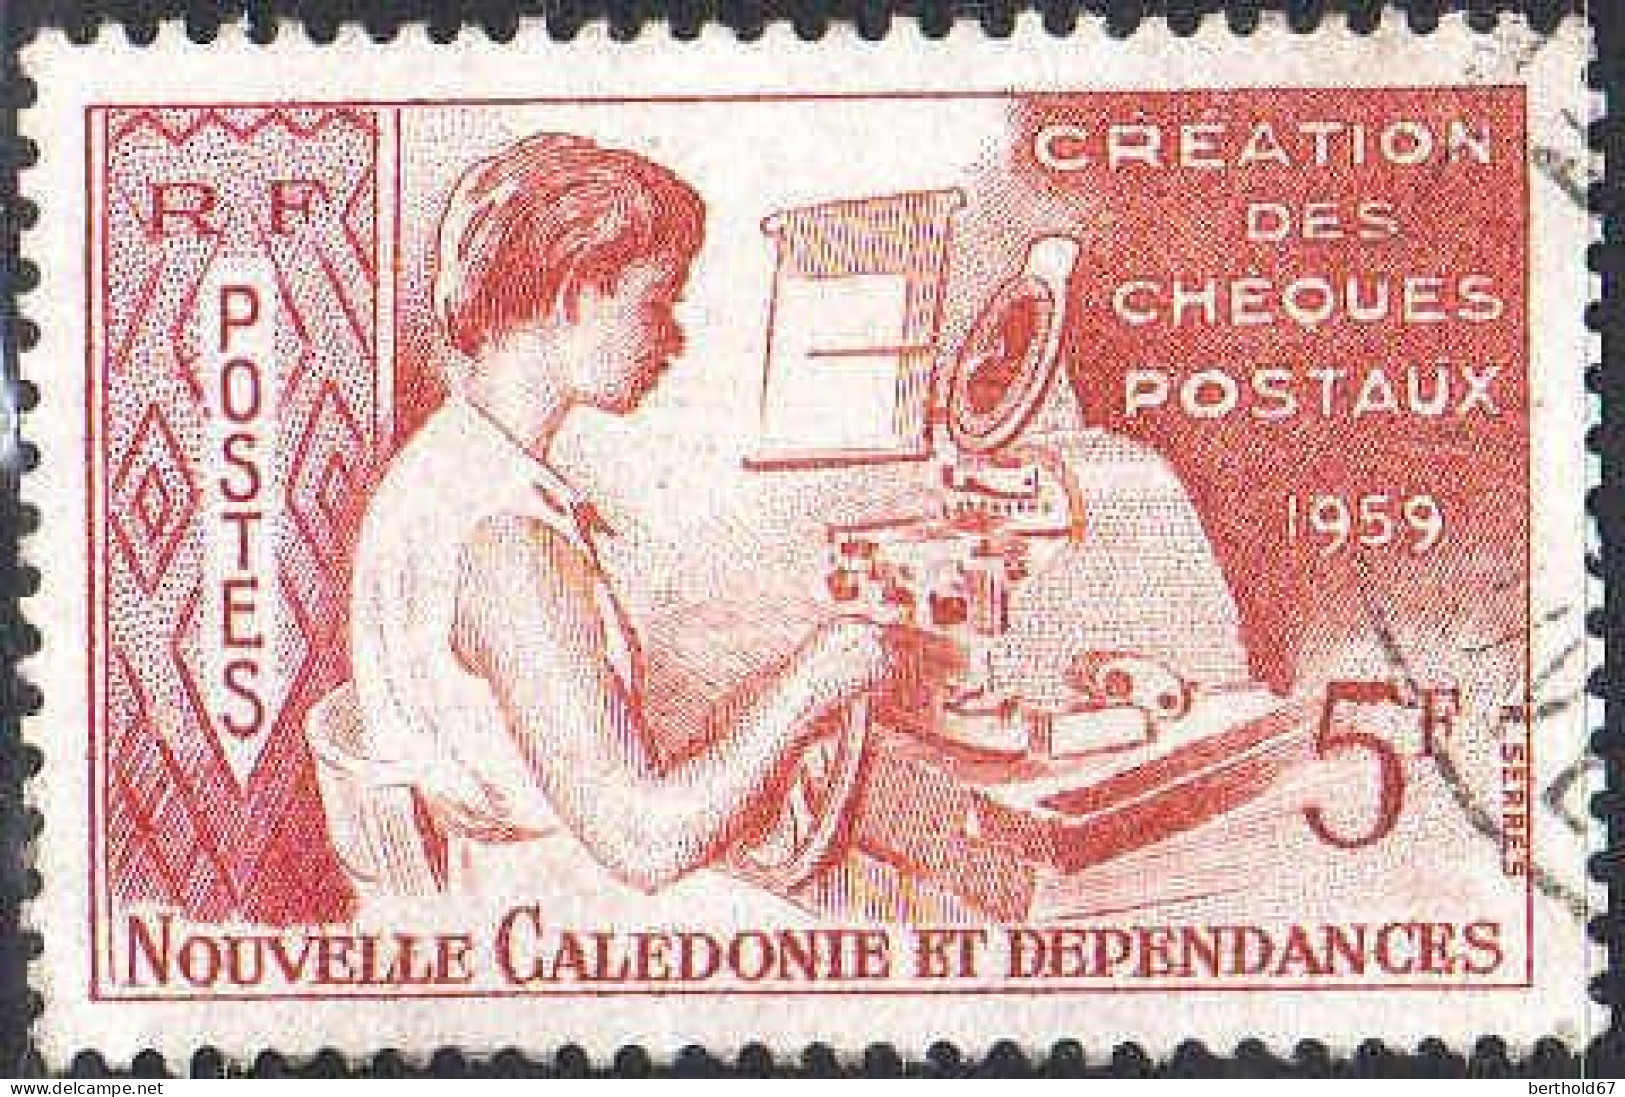 Nle-Calédonie Poste Obl Yv: 296 Mi:371 Création Des Cheques Postaux (Beau Cachet Rond) - Usados